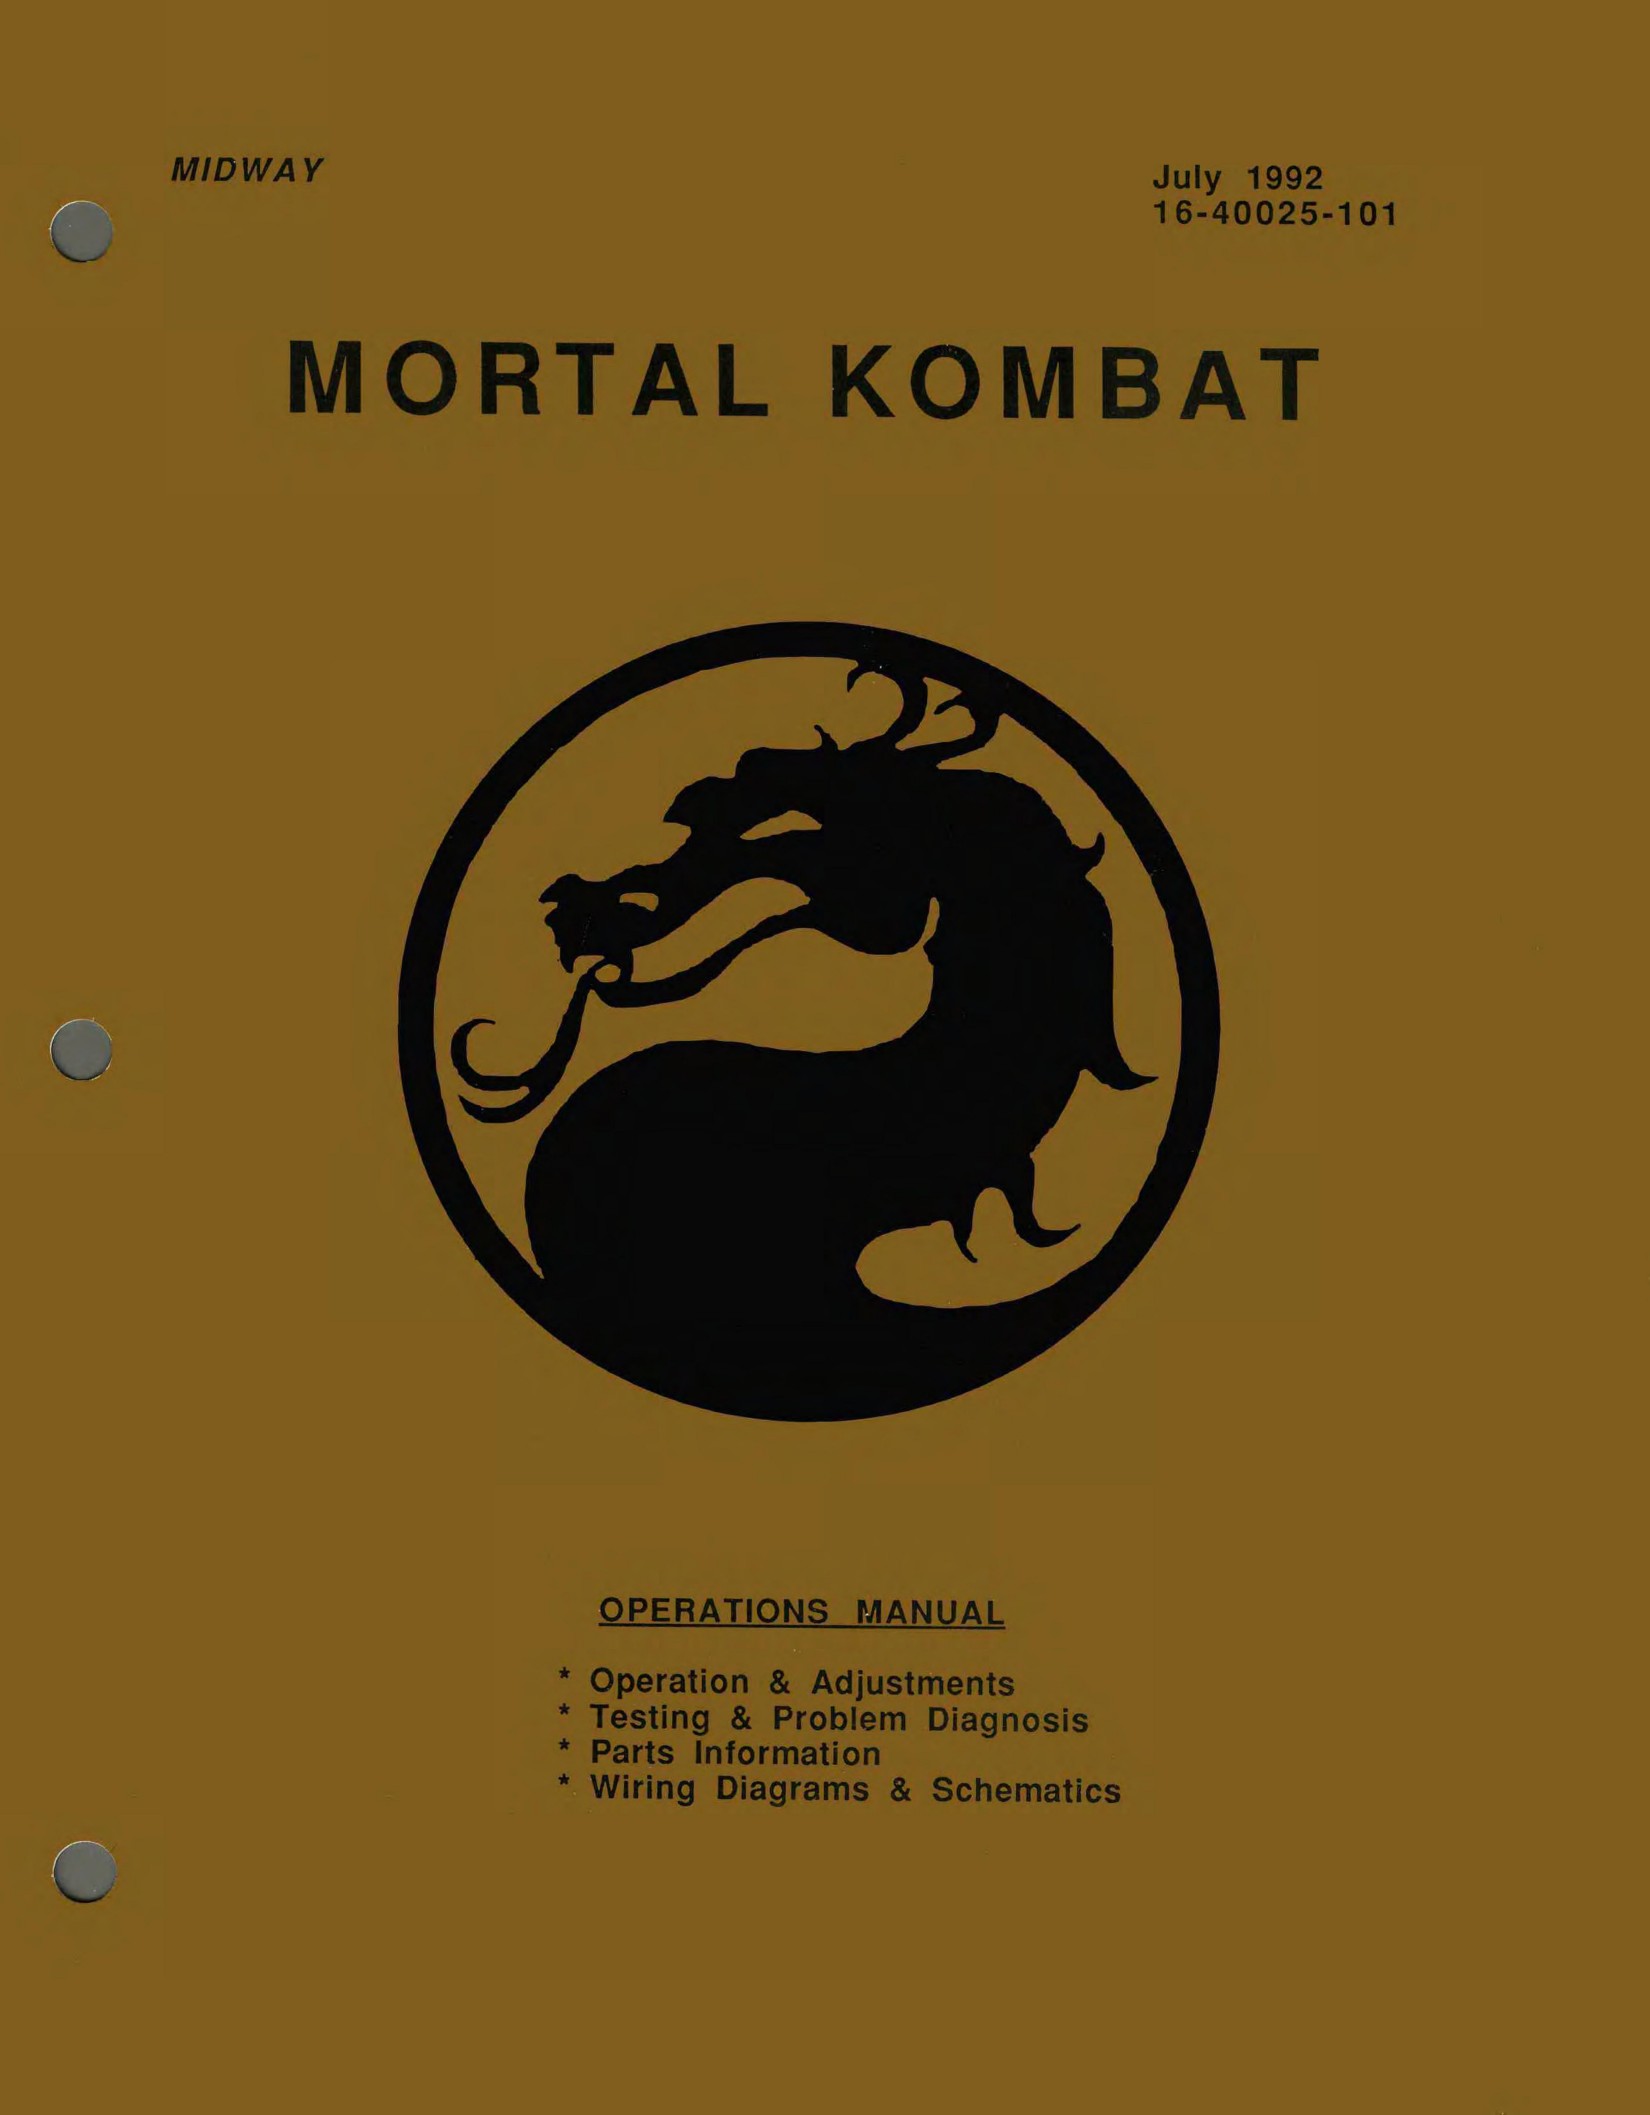 Mortal Kombat 1 (16-40025-101 July 1992)